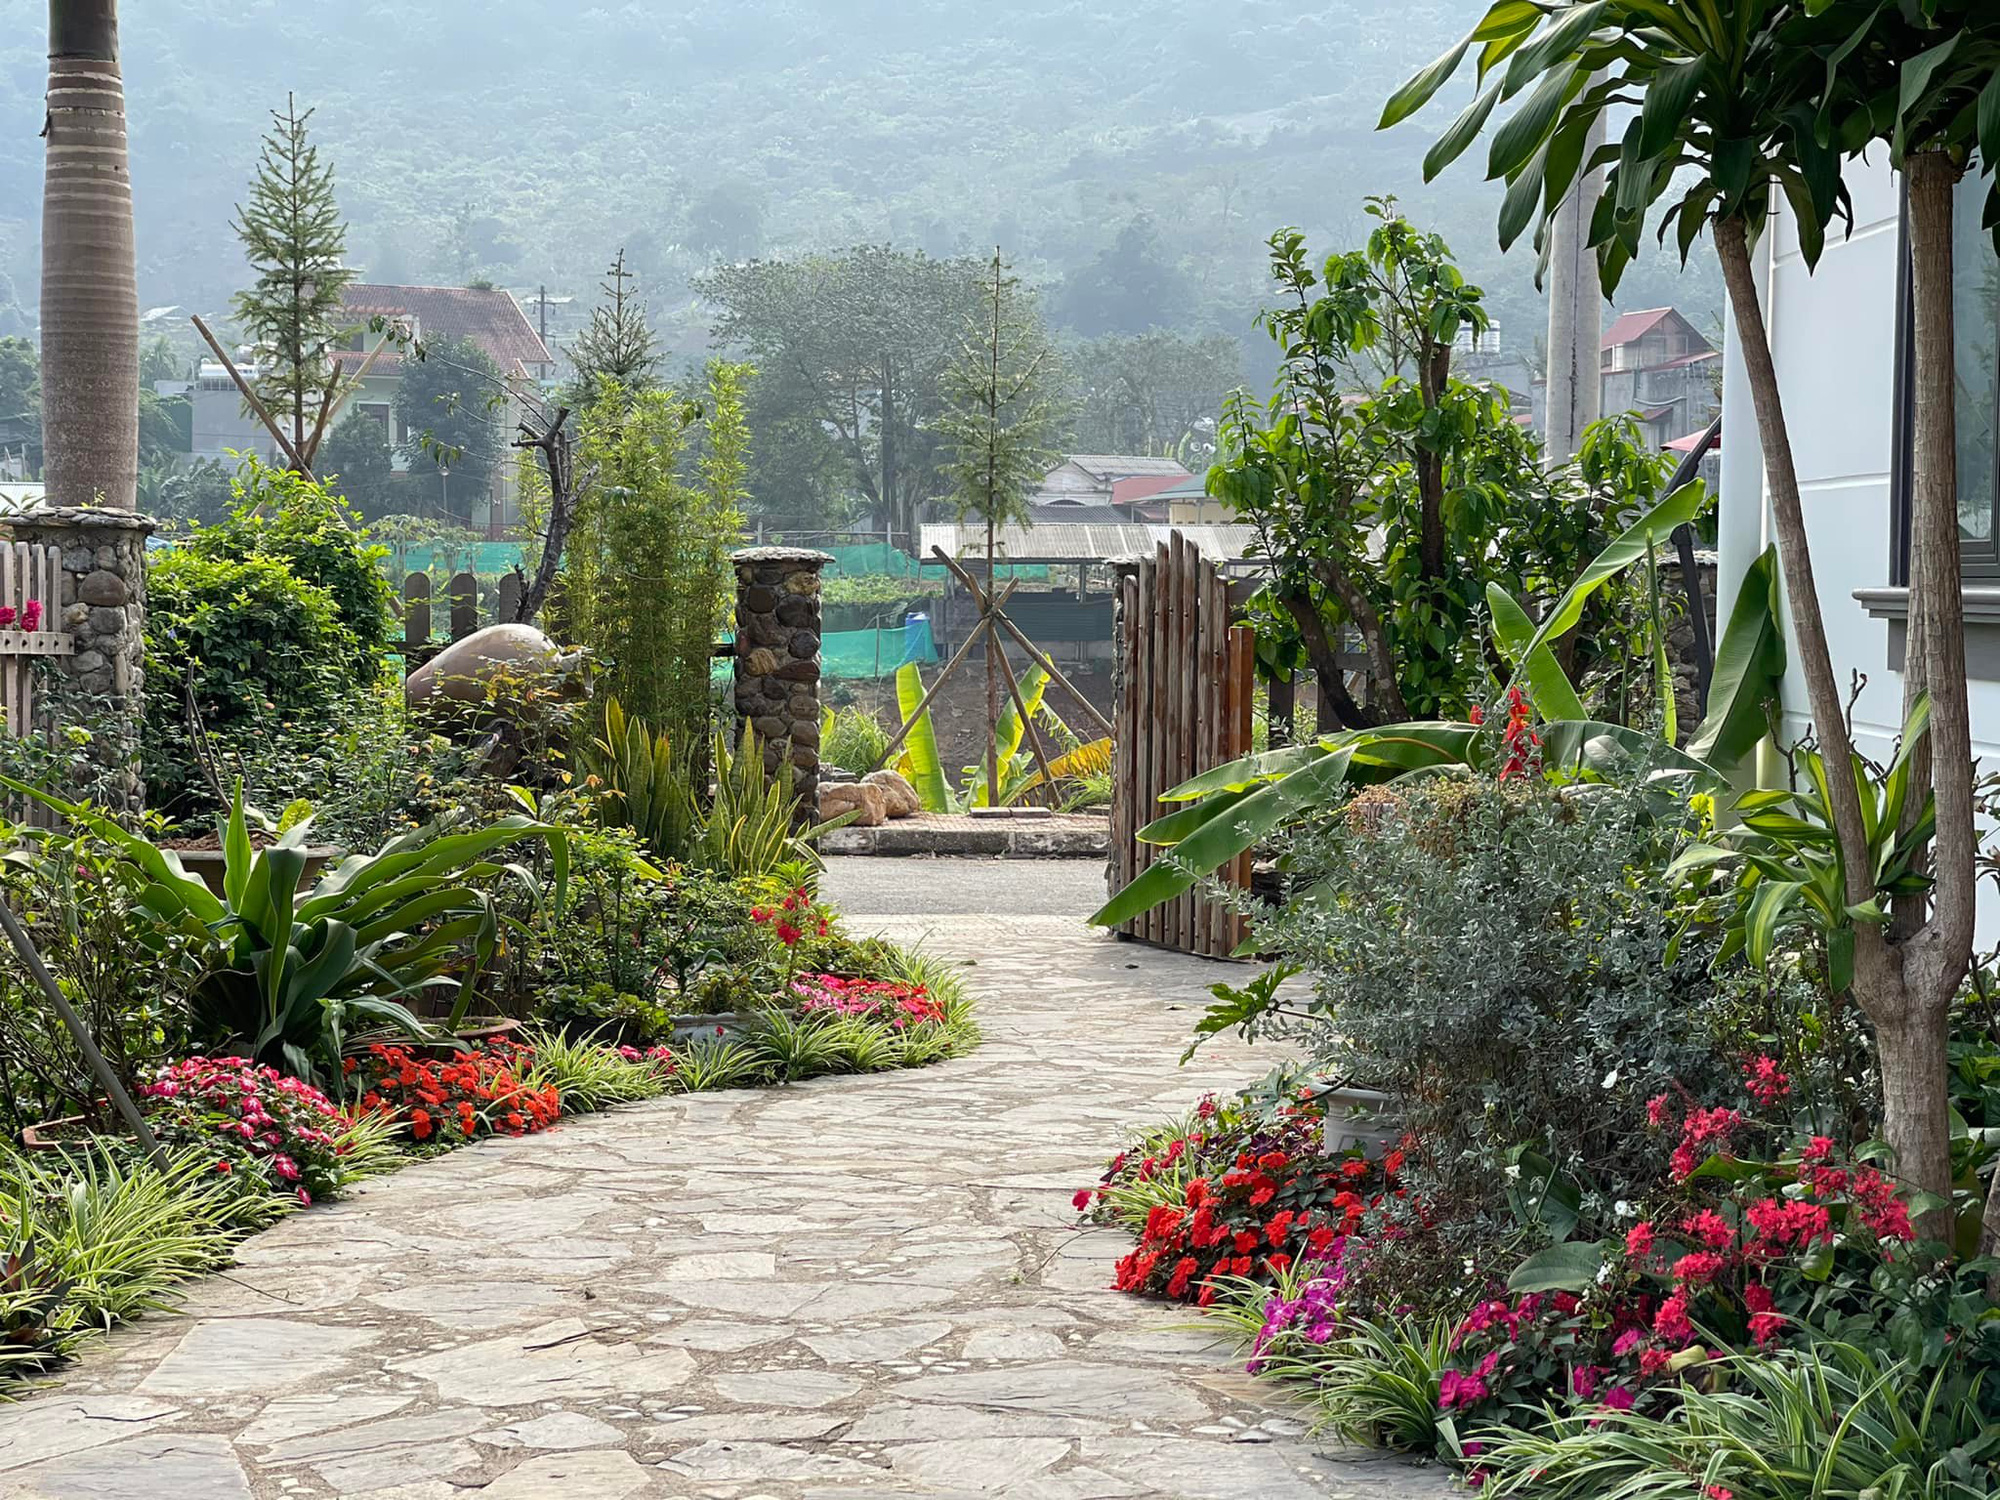 Chuyển về ngôi nhà rộng 700m2, mẹ đảm Hà Giang dành nửa diện tích để trồng vườn rau sạch hữu cơ, biến sỏi đá thành hoa trải dọc lối đi - Ảnh 1.